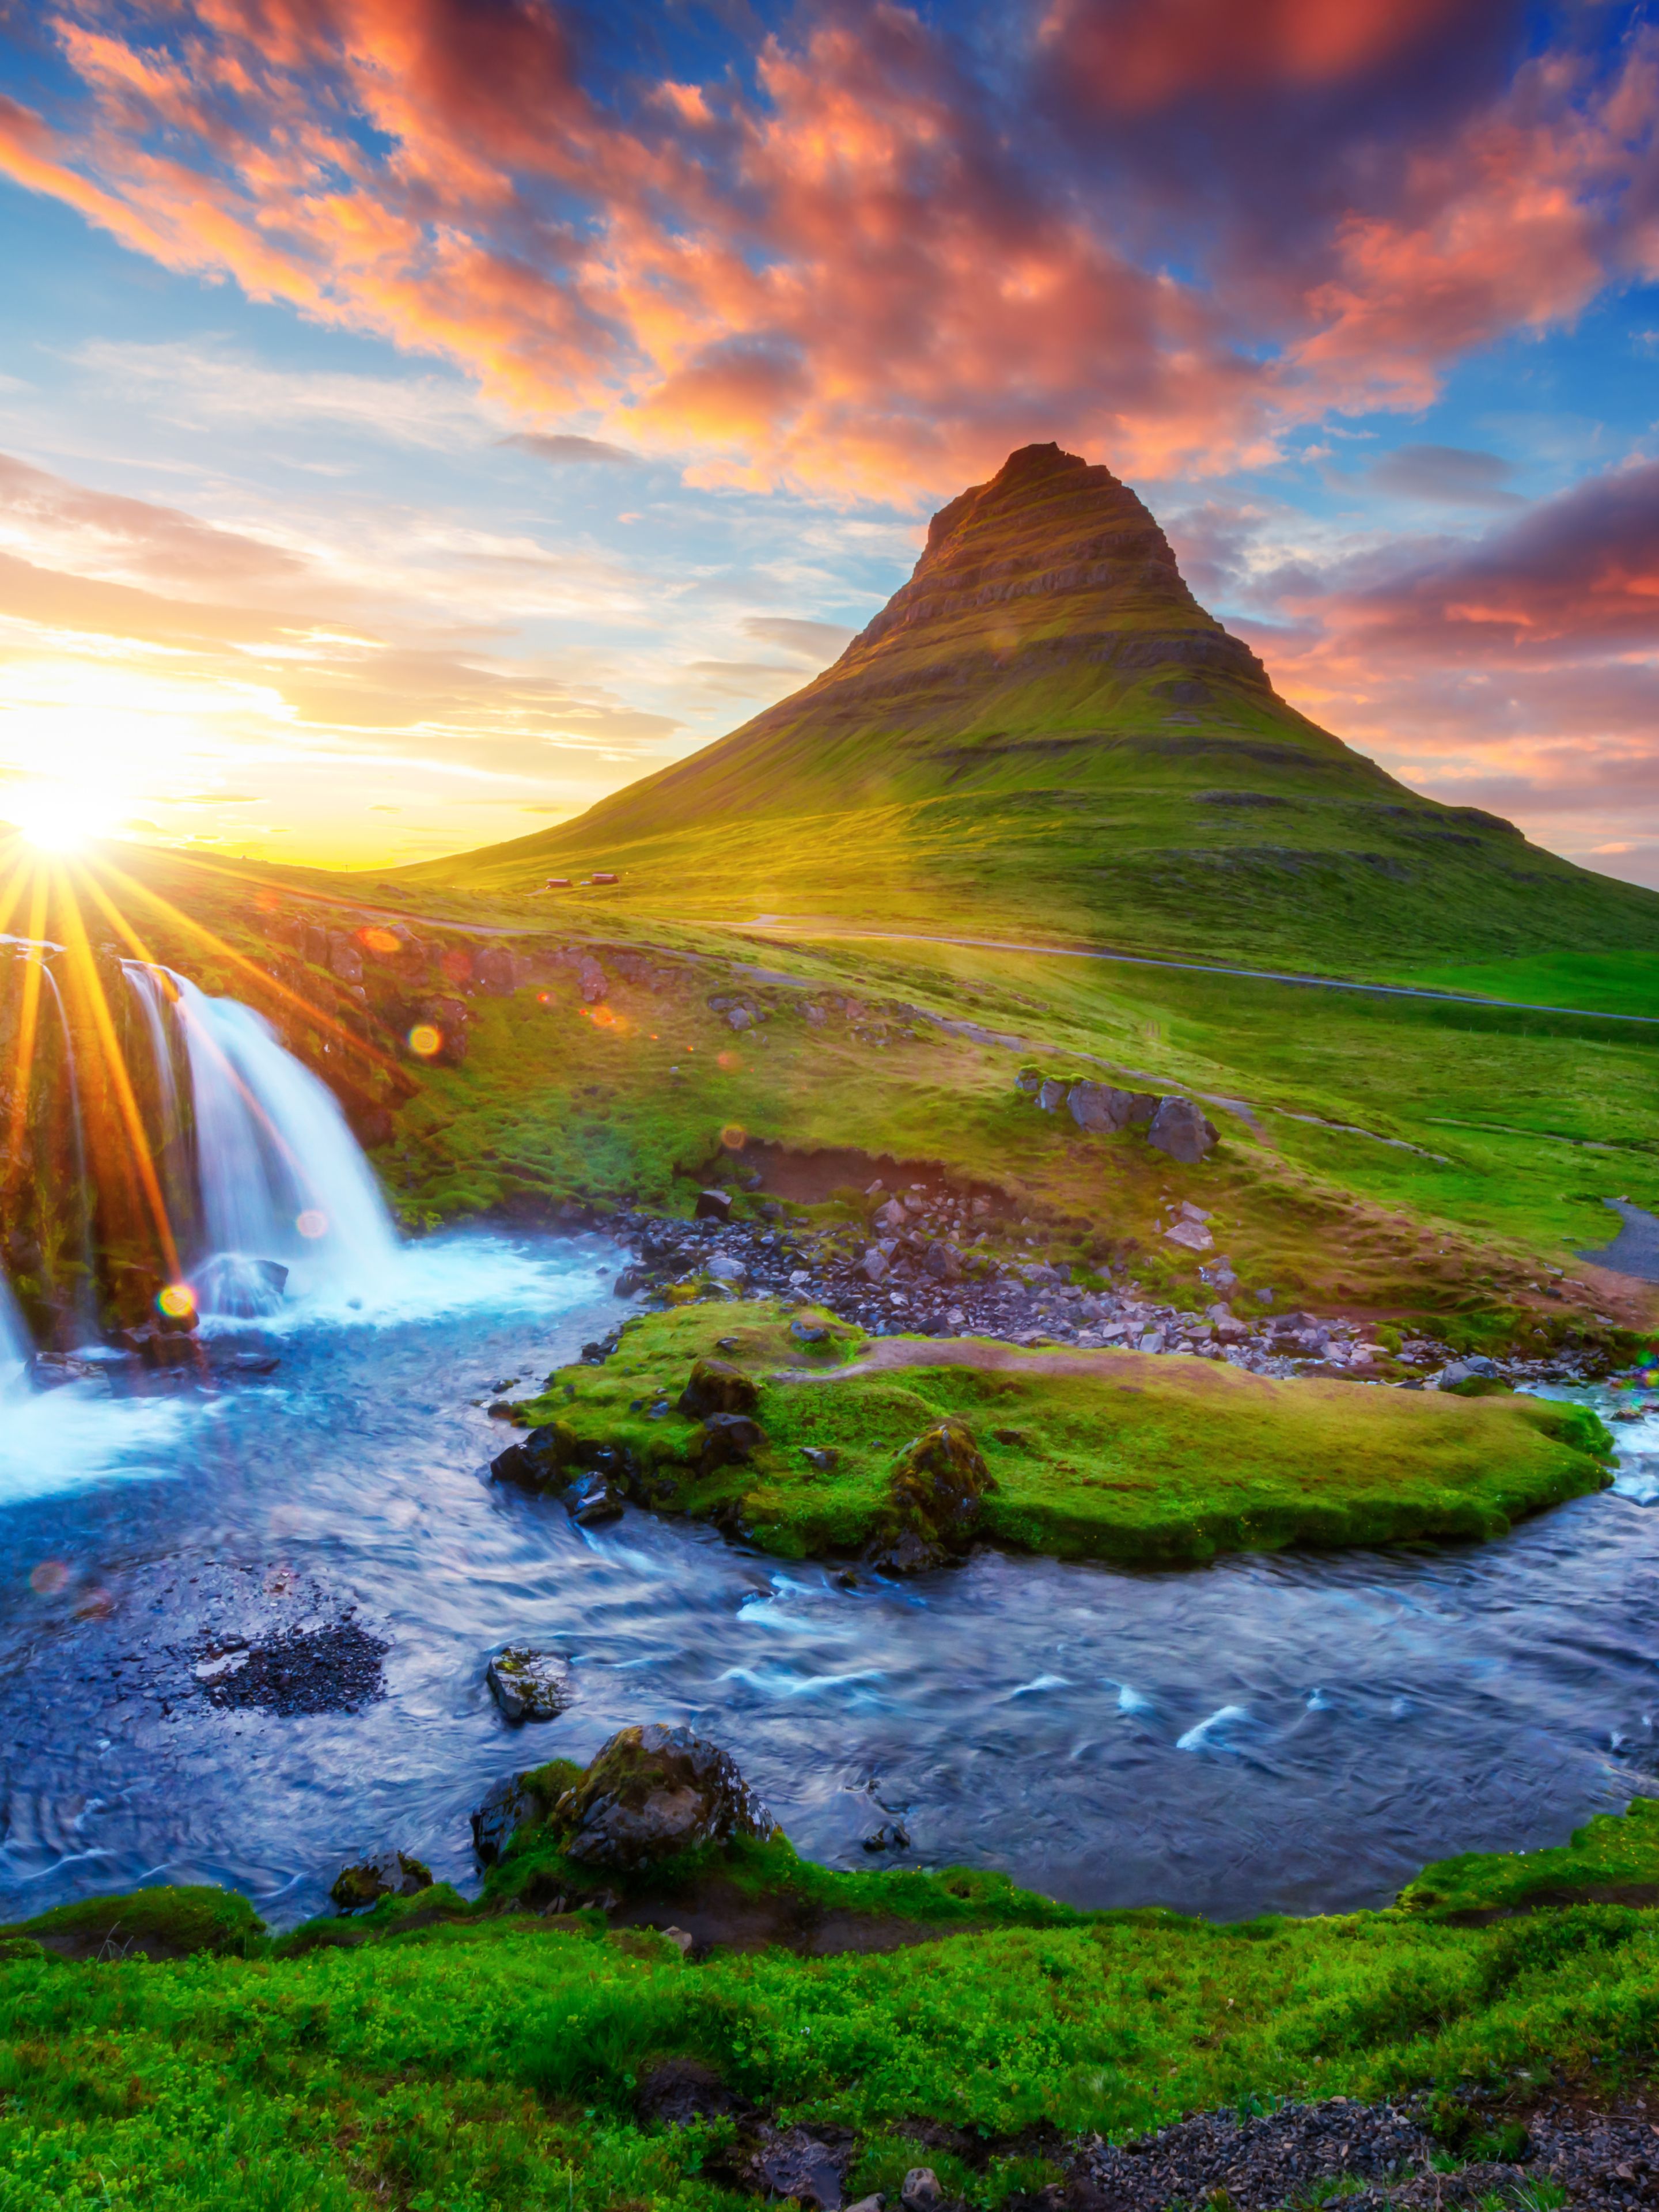 Montagne verte en Islande avec un coucher de soleil en arrière-plan et une cascade à l’avant